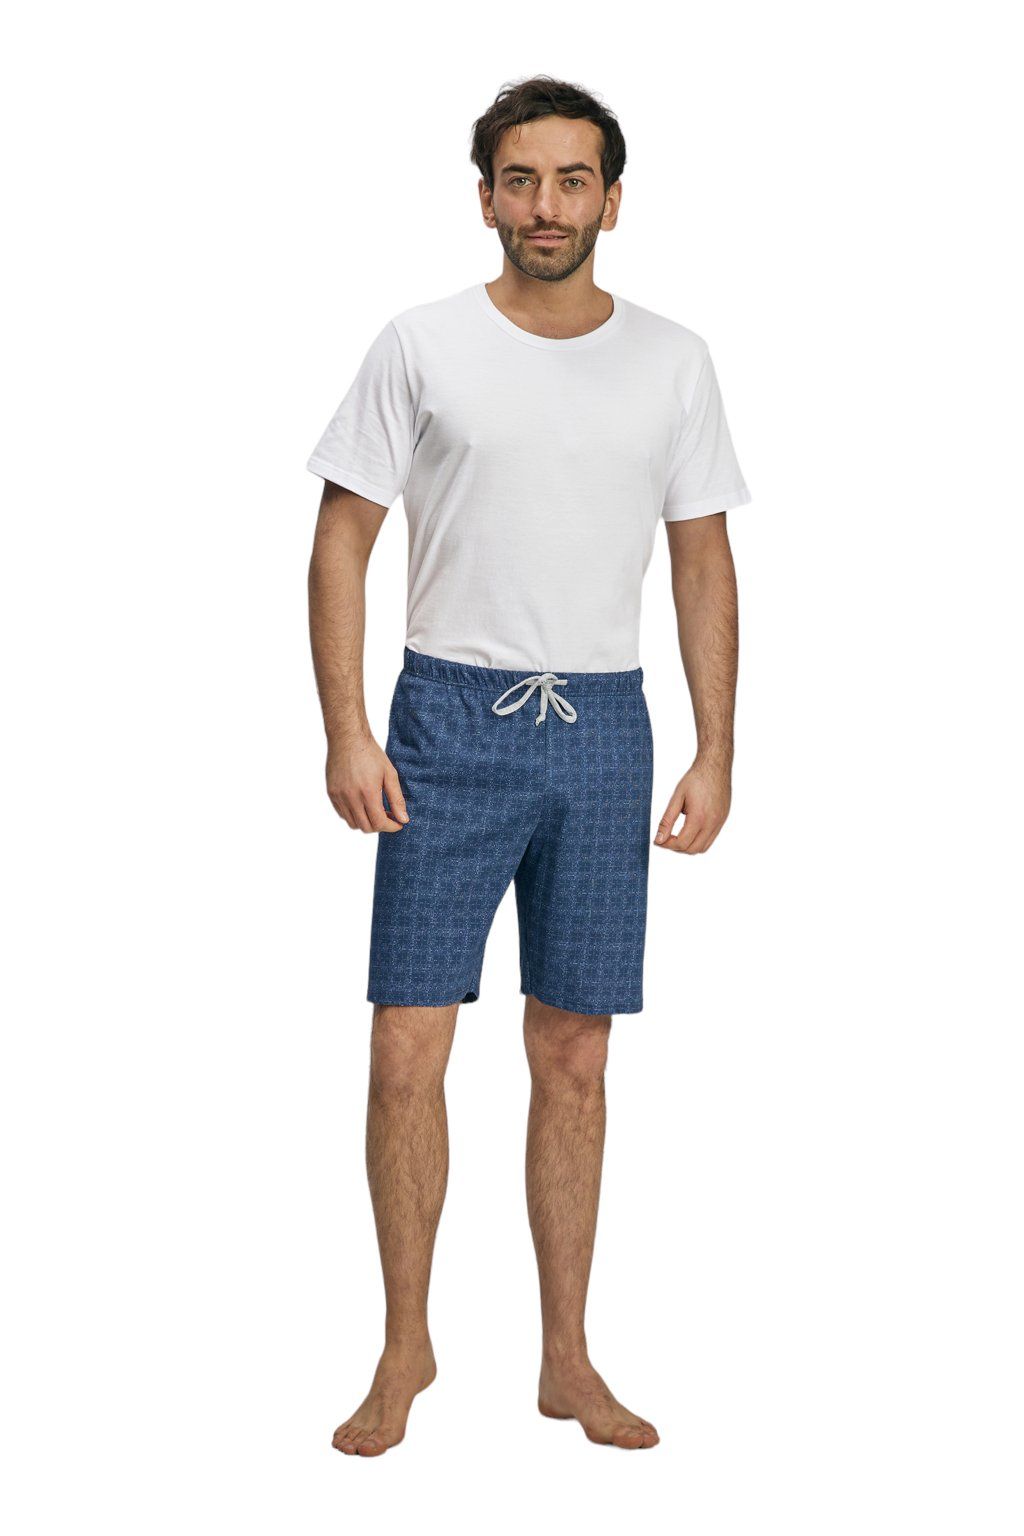 Pánské pyžamové kalhoty s krátkými nohavicemi, 204123 466, modrá - Velikost L Wadima